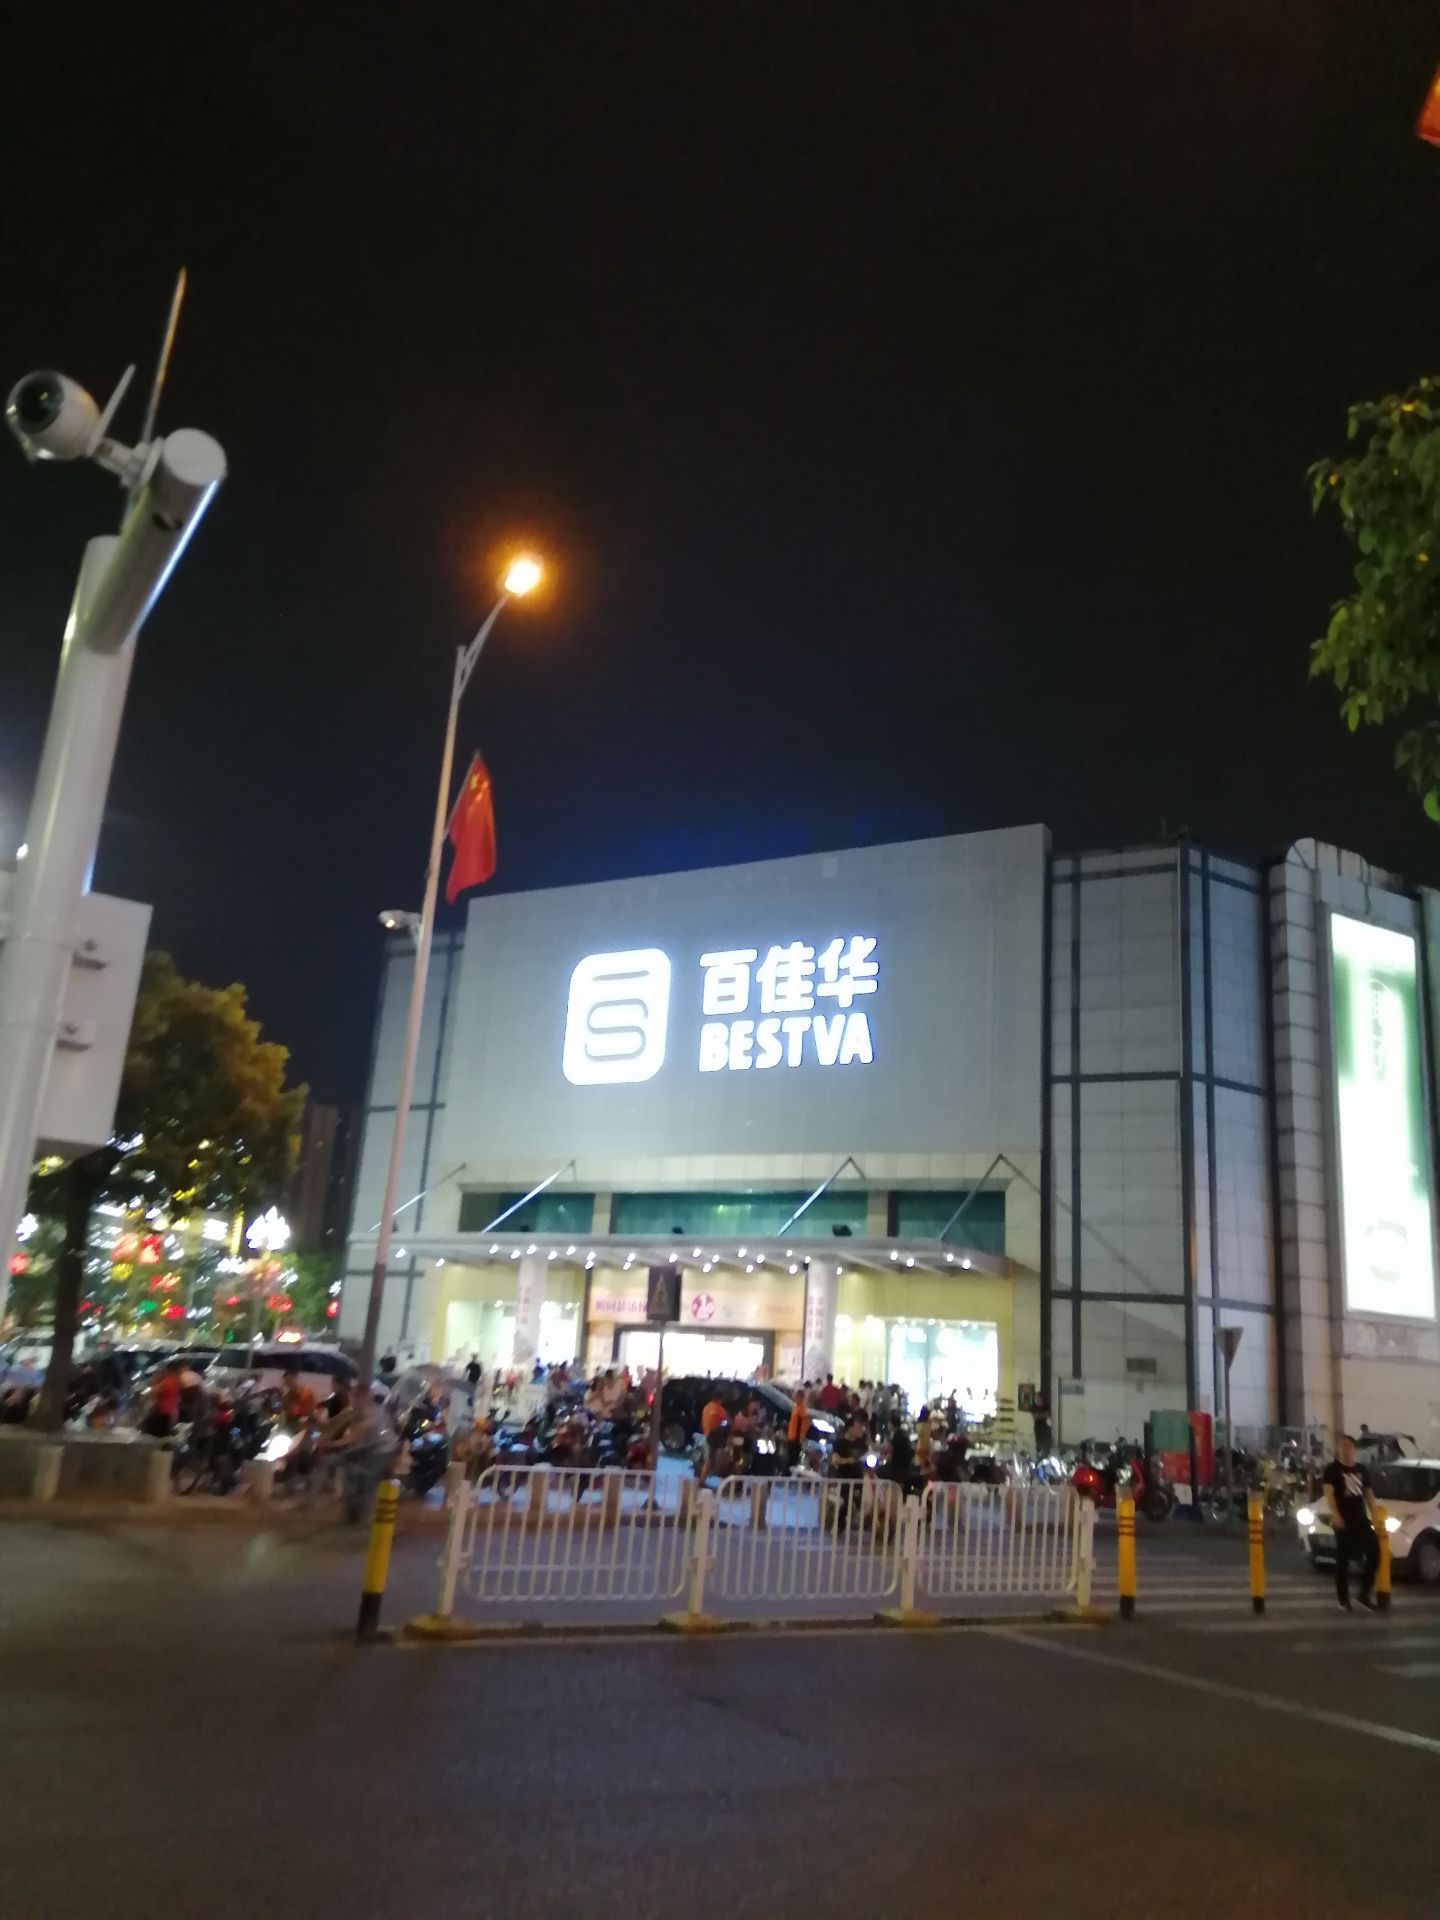 河南华豫百佳超市总部图片